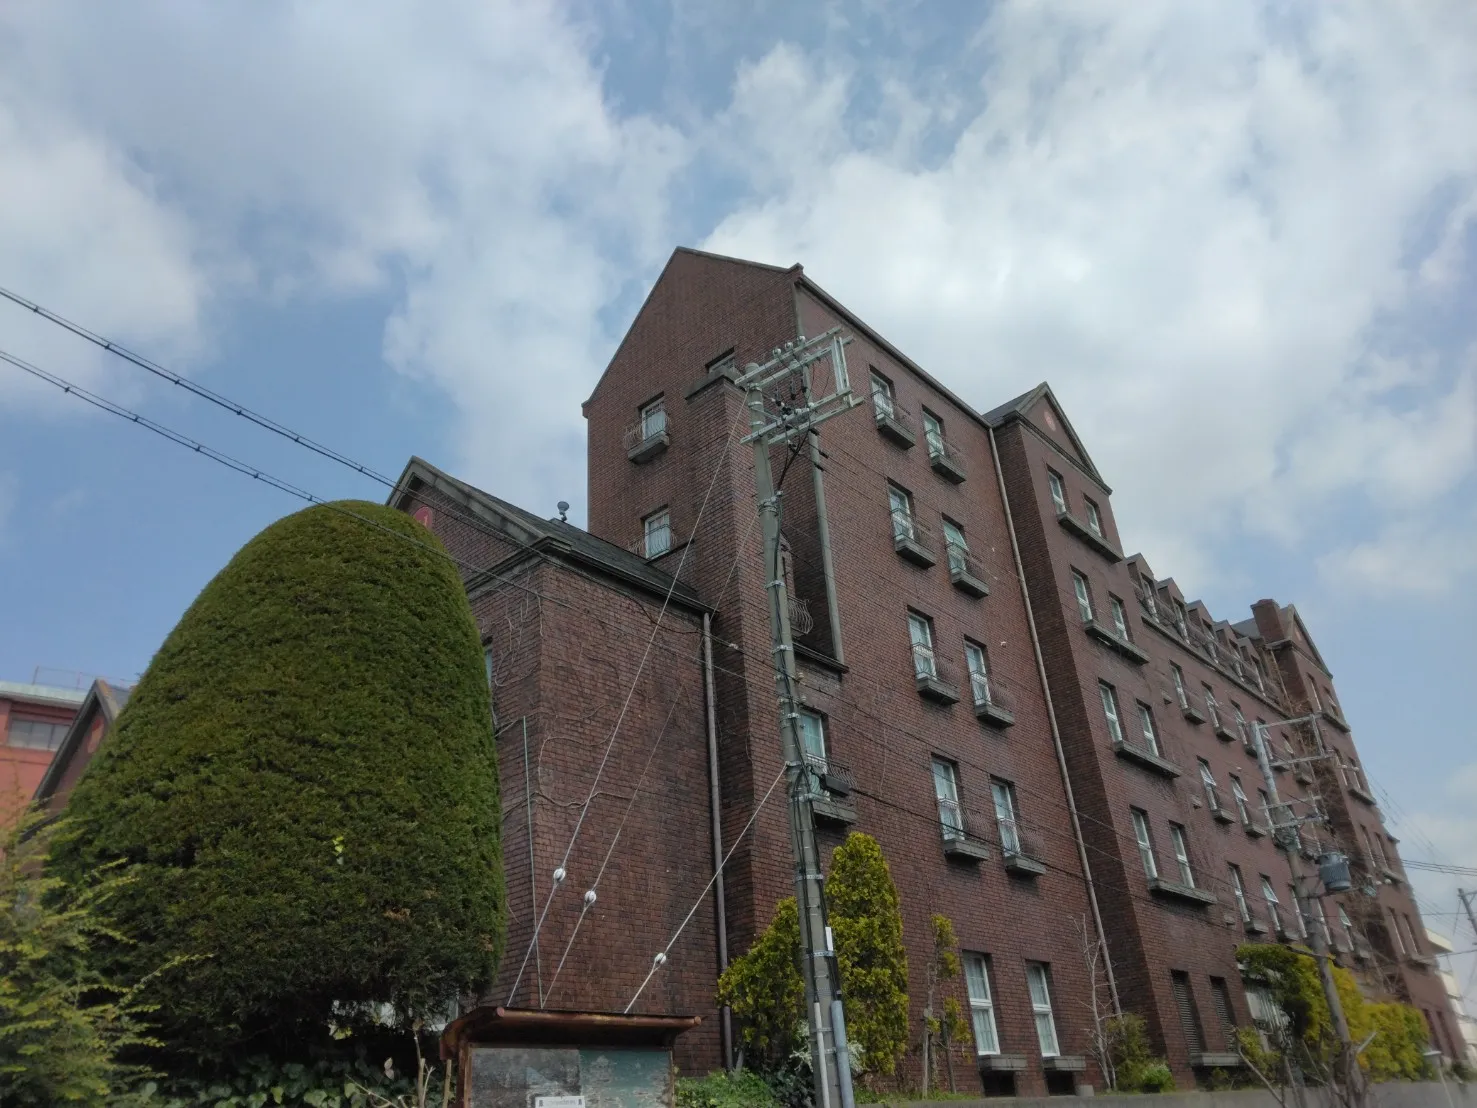 神戸北野ホテル